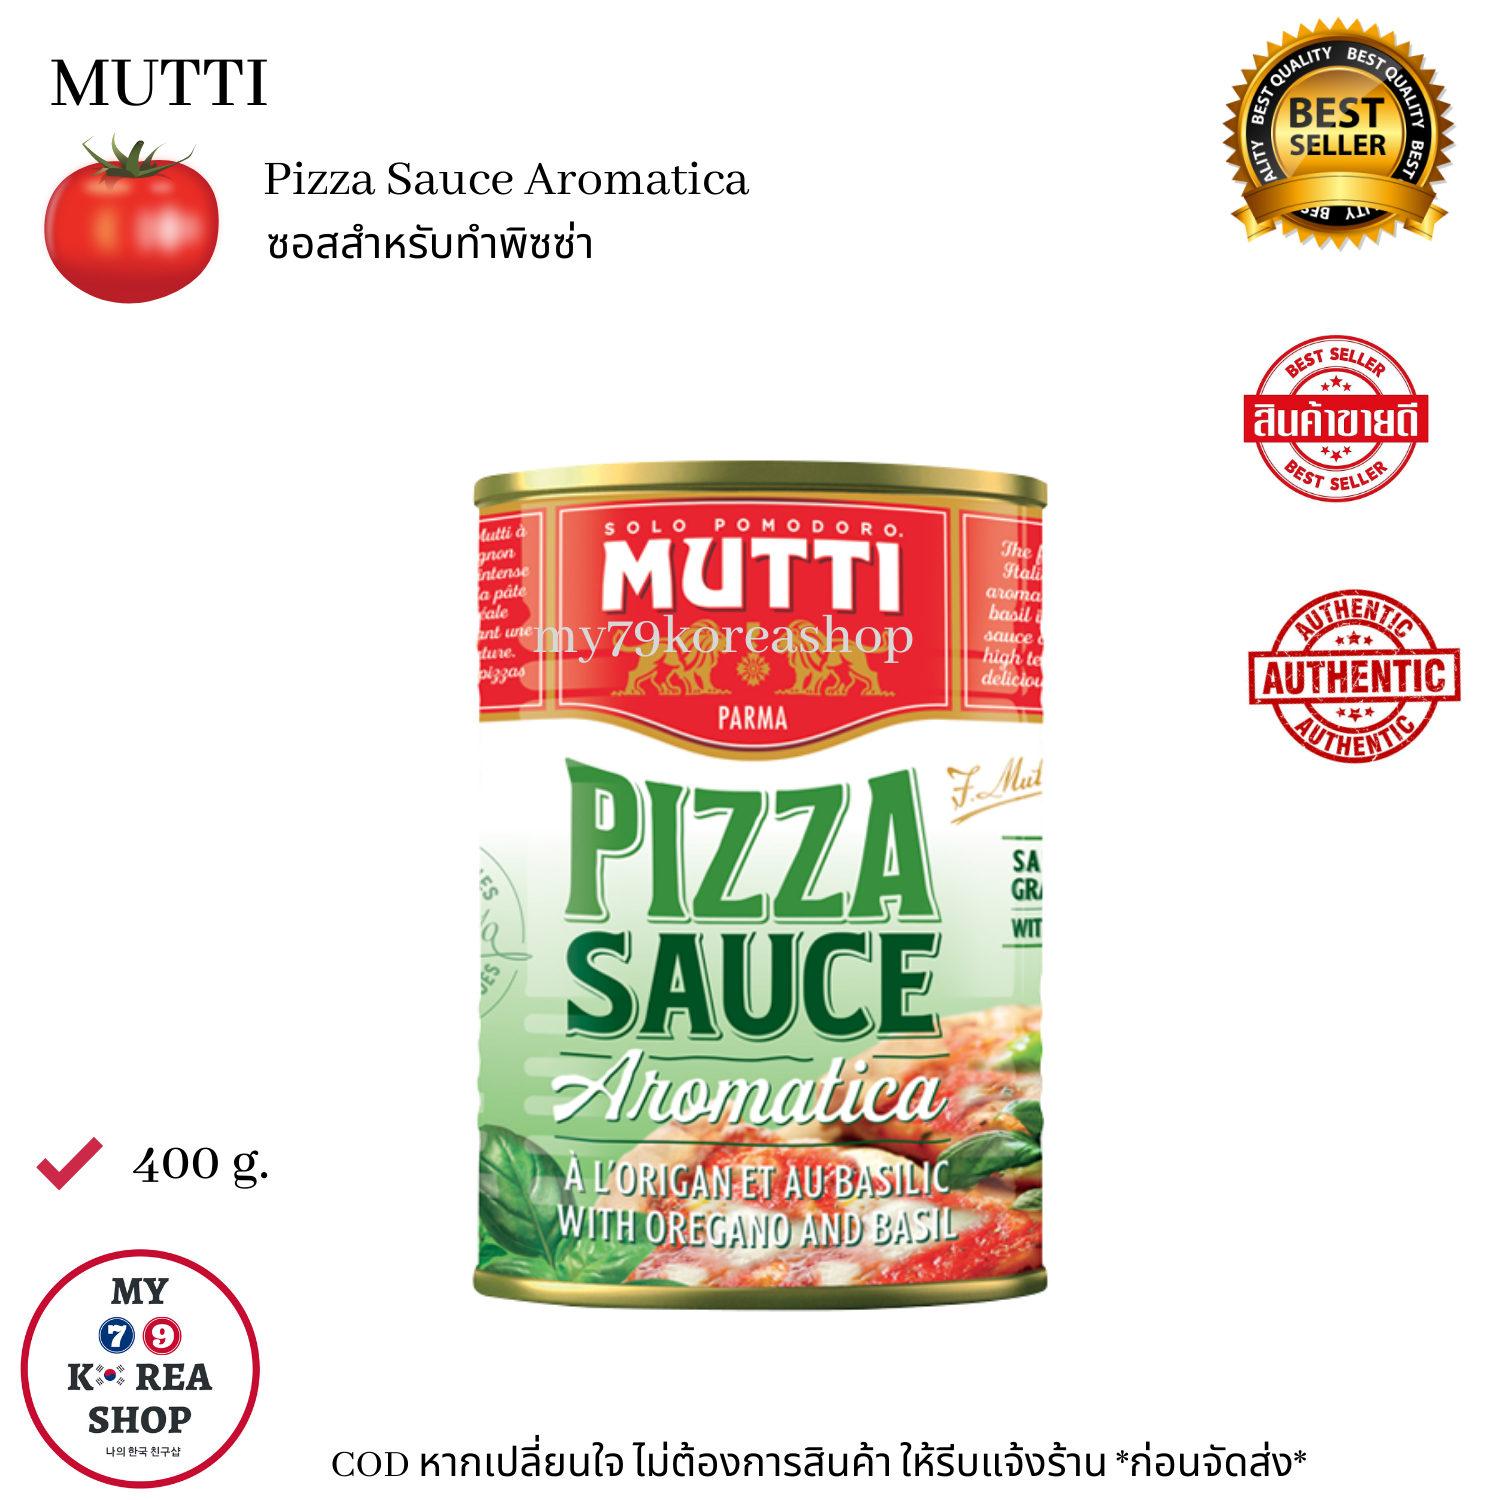 Mutti Pizza Sauce Aromatica 400 g. ซอสสำหรับทำพิซซ่า